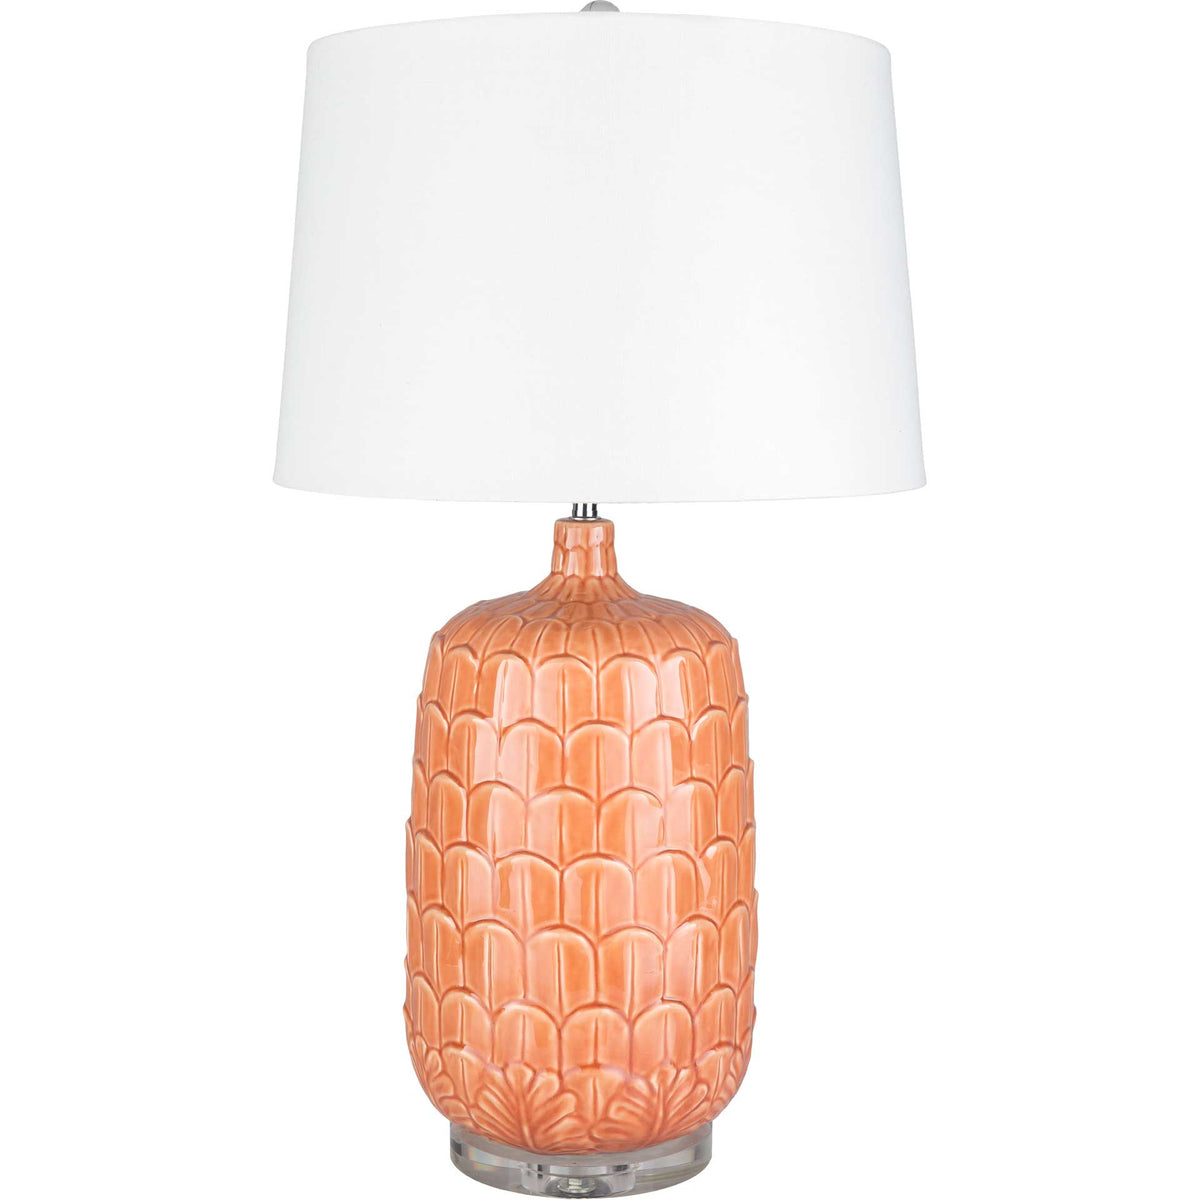 Brian Table Lamp Bright Orange/White/Coral